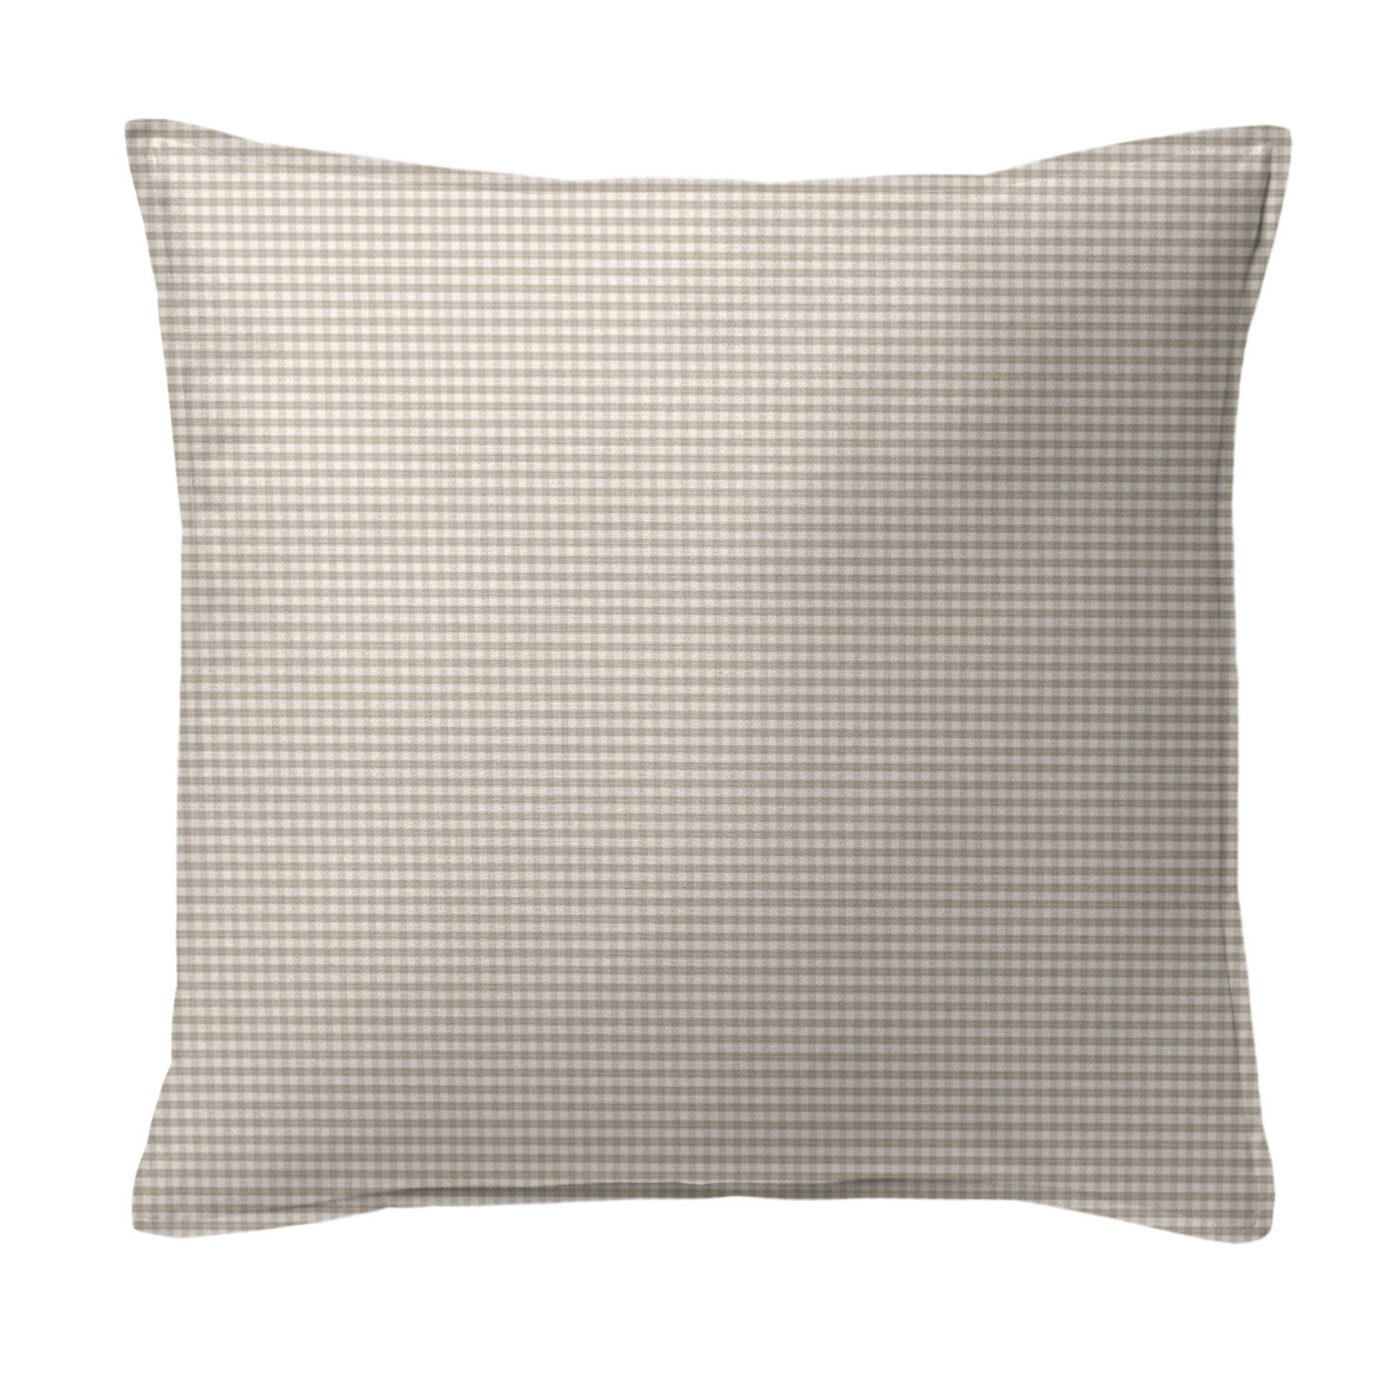 Rockton Check Taupe Decorative Pillow - Size 24" Square